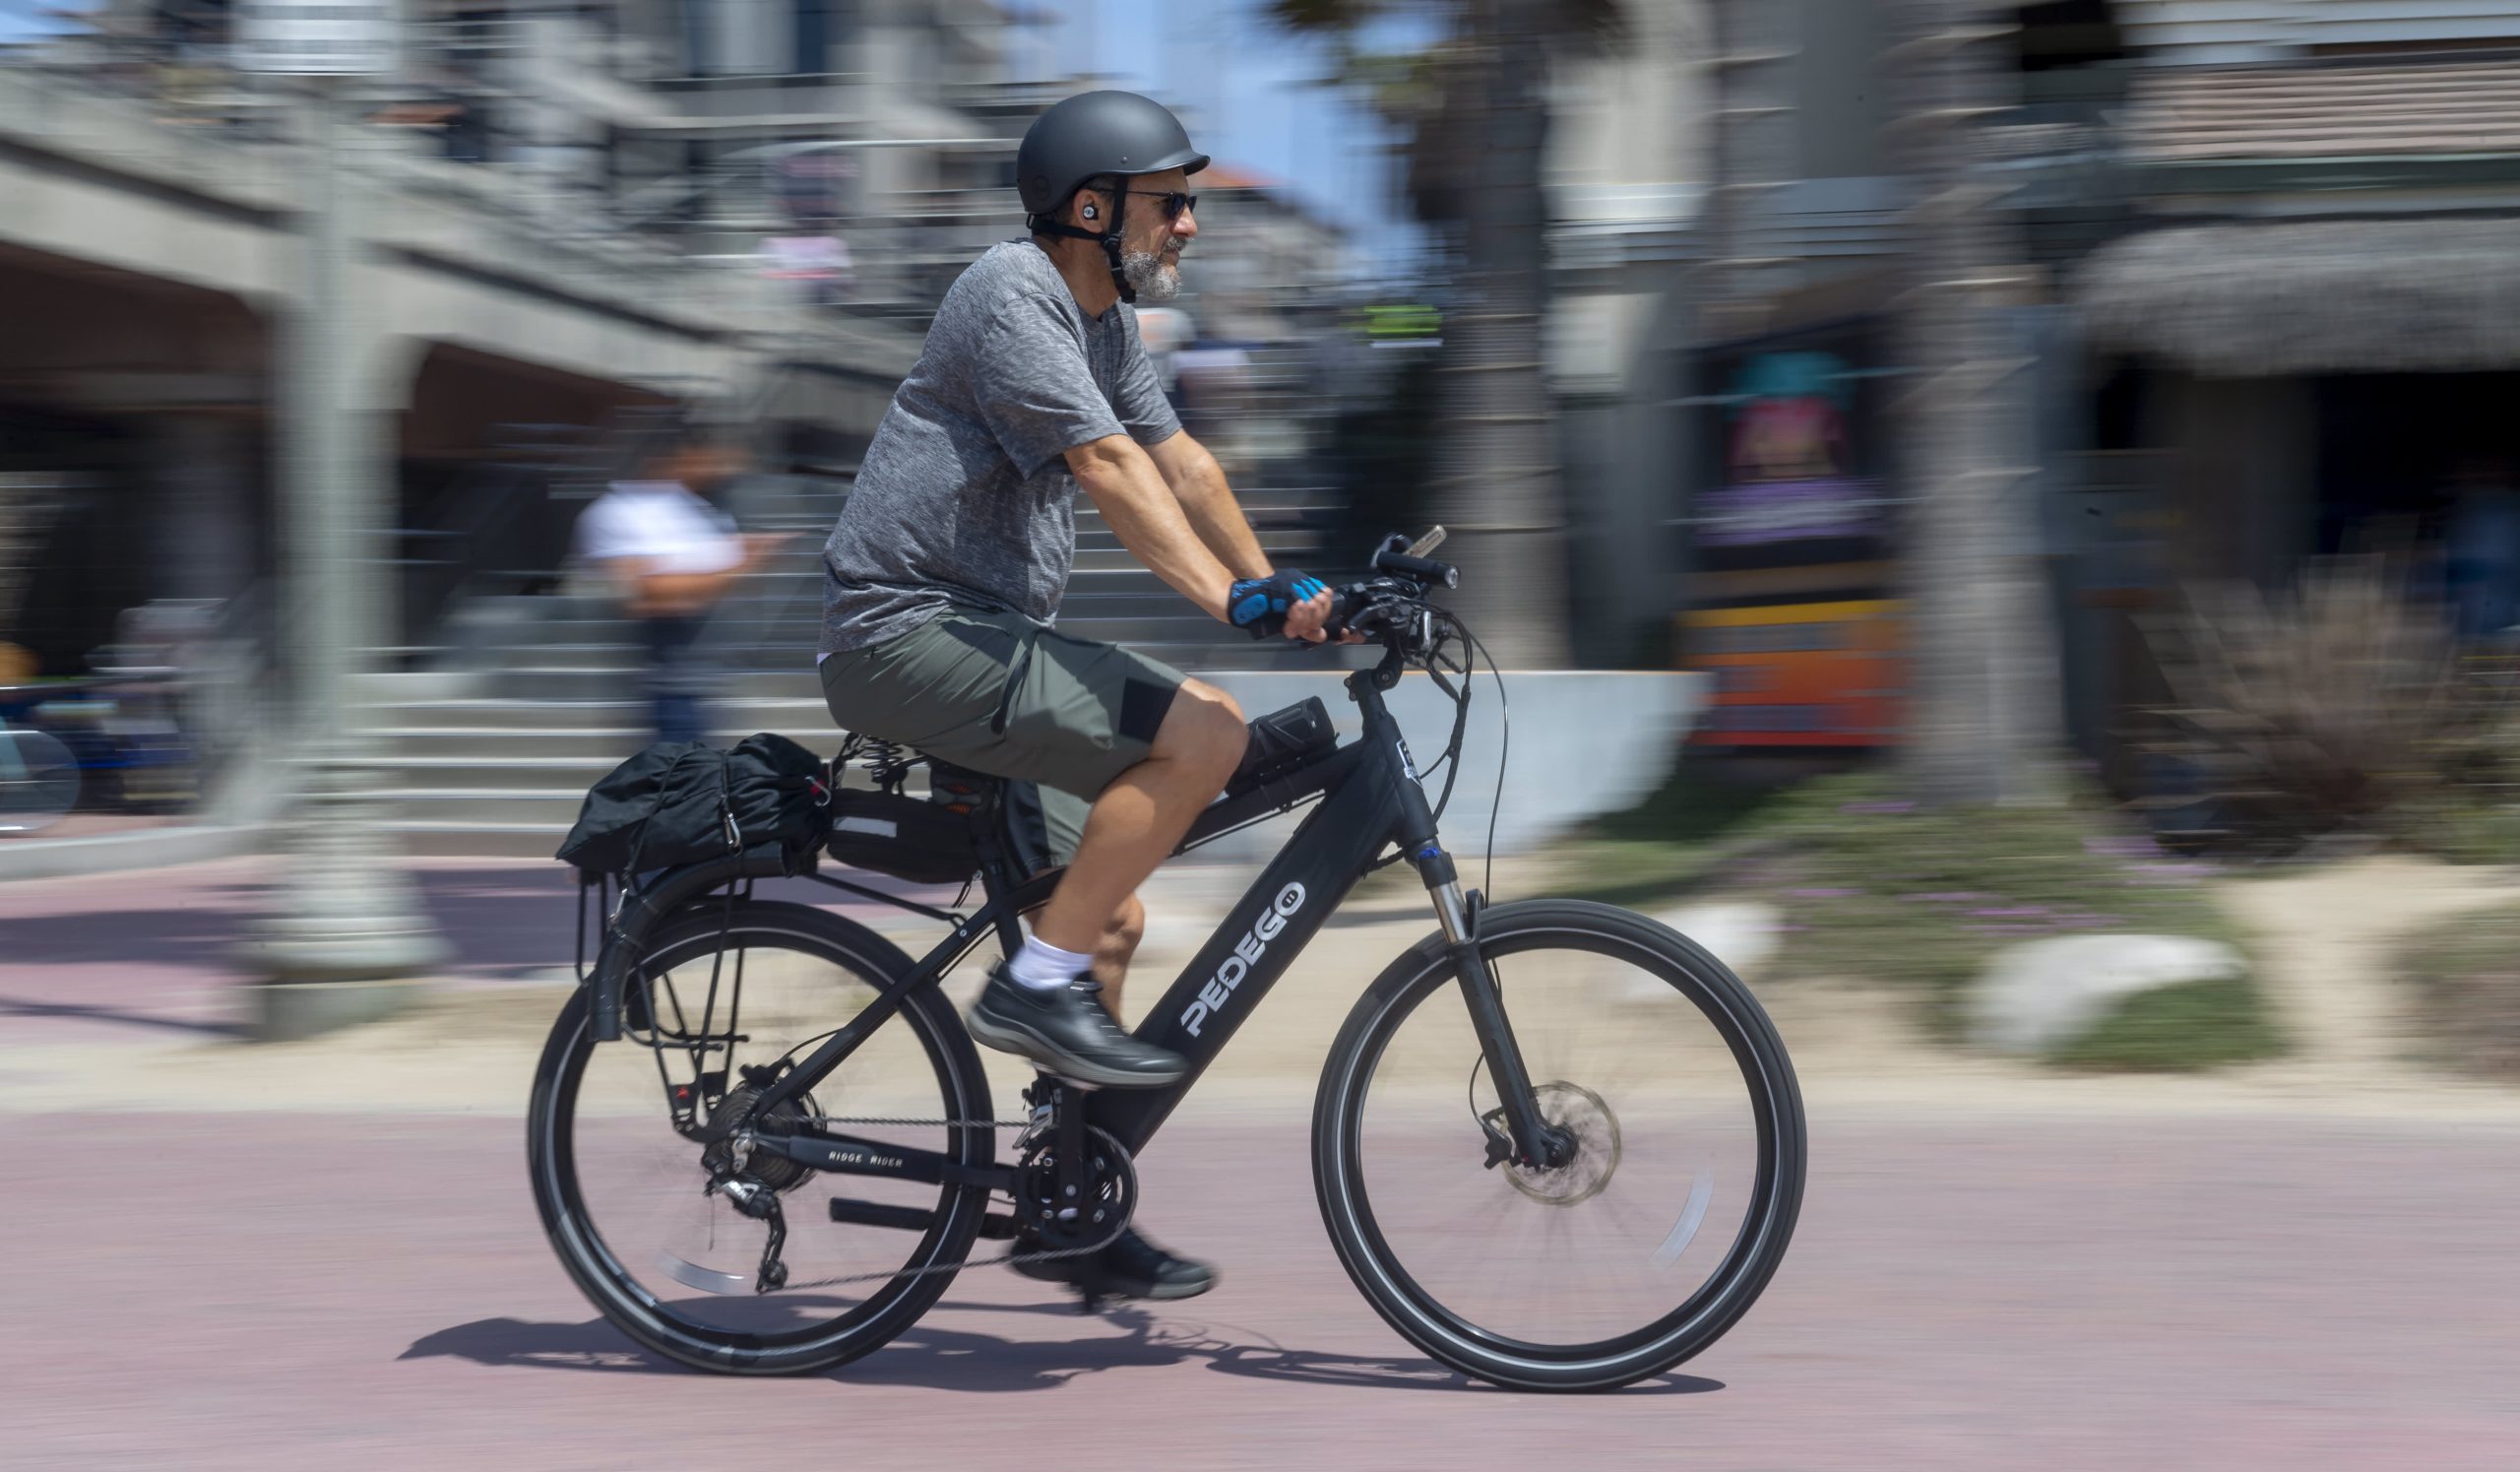 La factura Build Back Better de Biden puede proporcionar un crédito fiscal para bicicletas eléctricas de hasta $ 900